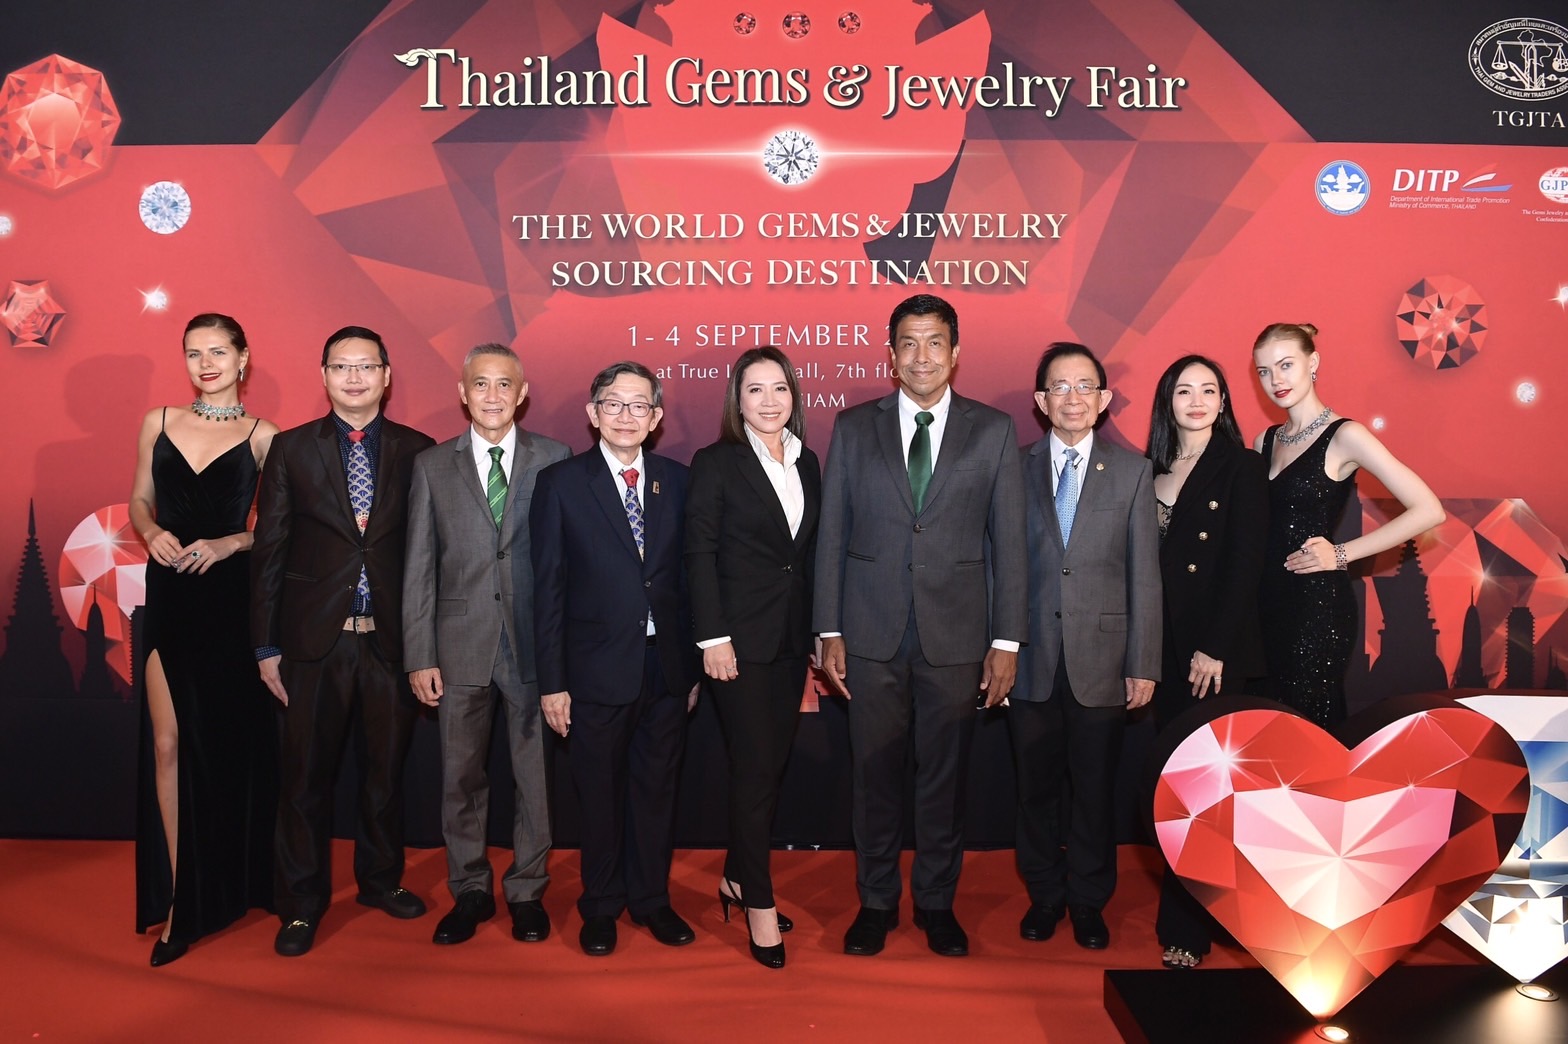 ข่าวแฟชั่น - TGJTA Launches Thailand Gems & Jewelry Fair 2022,  Aiming to Push Thailand As Top Sourcing Destination Among Global Traders